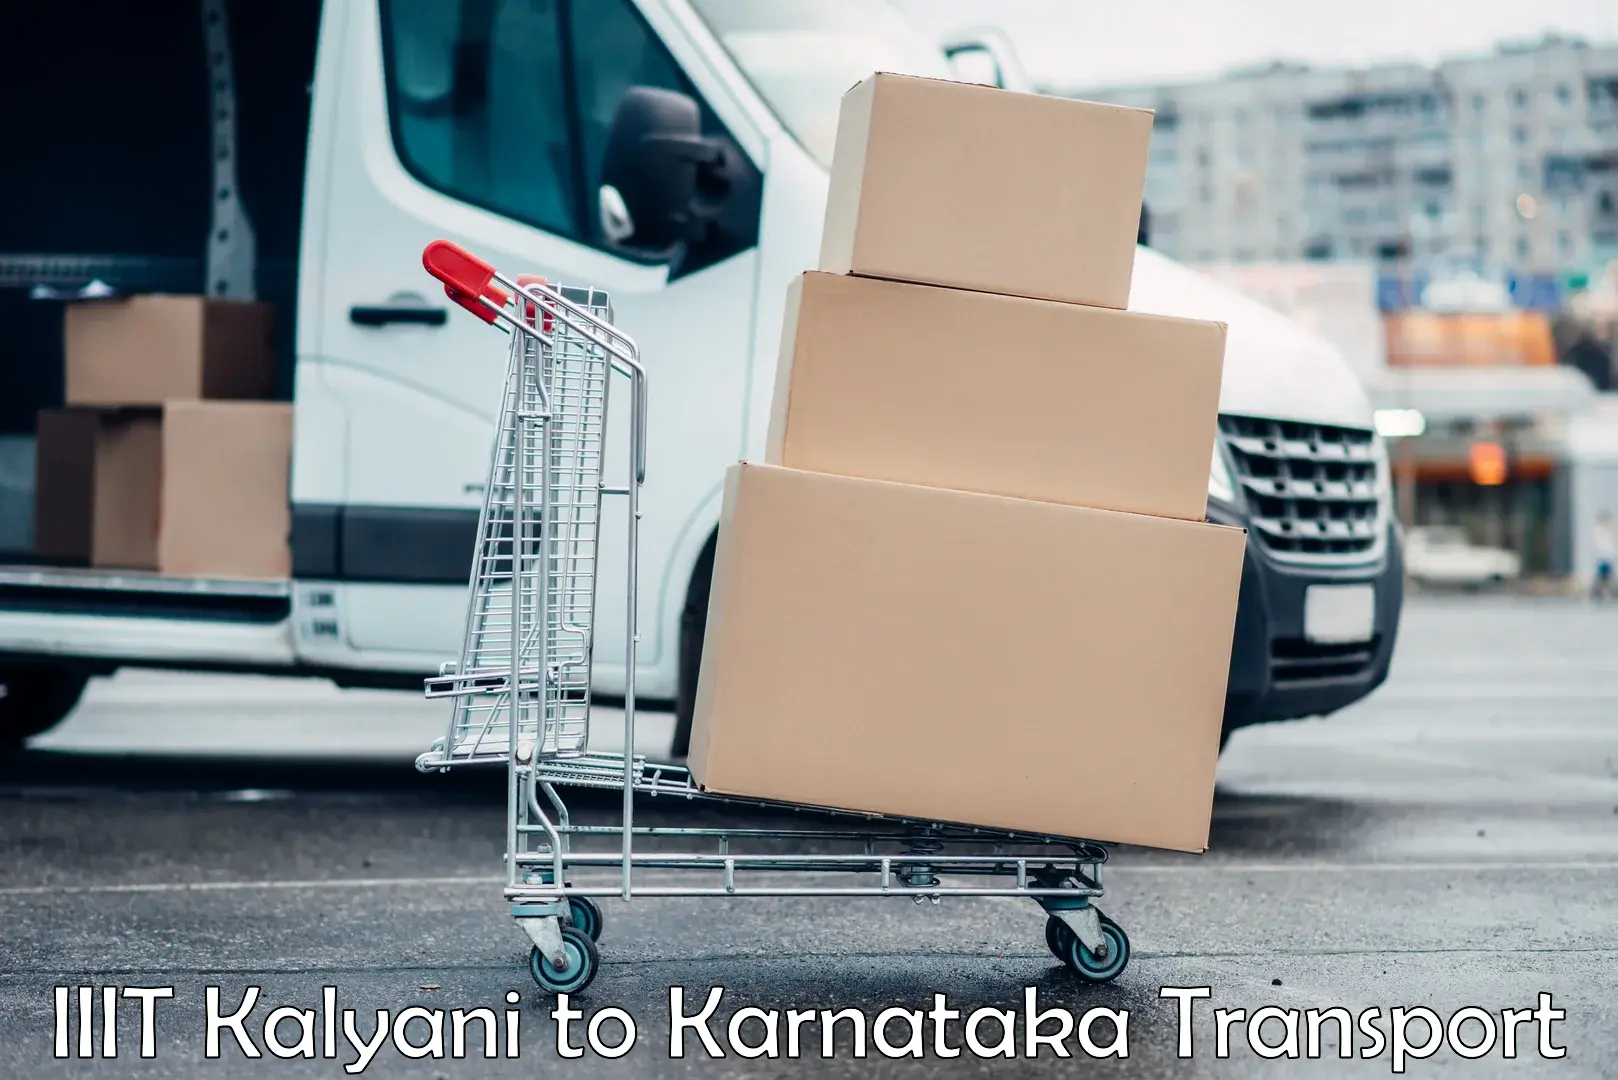 Transport in sharing IIIT Kalyani to Srinivaspur